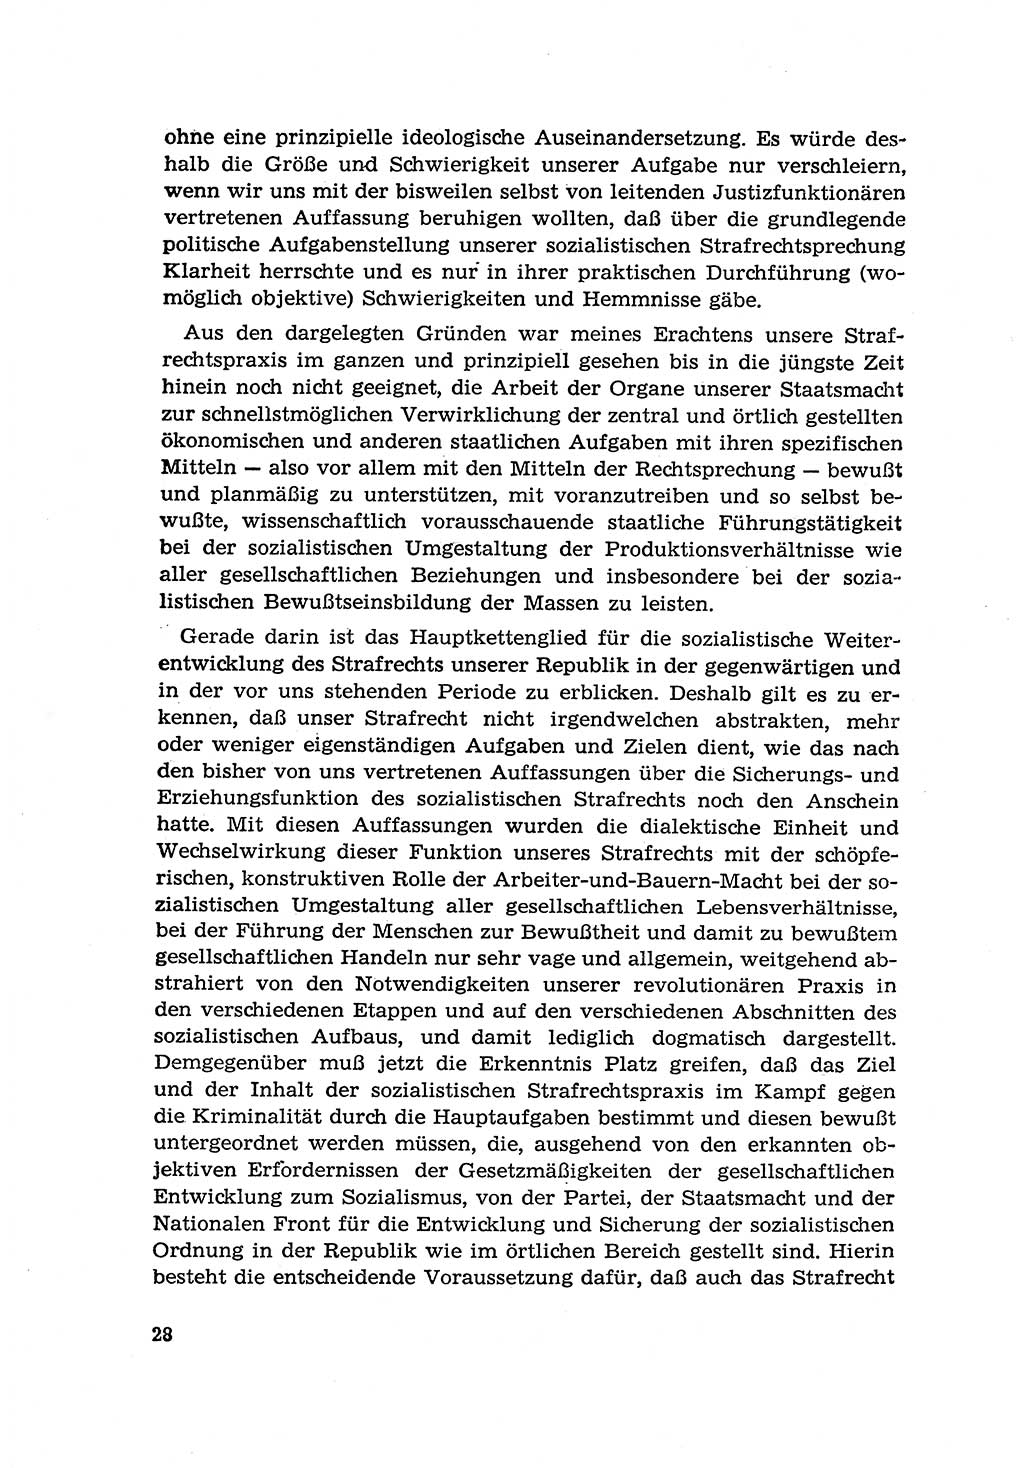 Zur Entwicklung des sozialistischen Strafrechts der Deutschen Demokratischen Republik (DDR) 1960, Seite 28 (Entw. soz. Strafr. DDR 1960, S. 28)